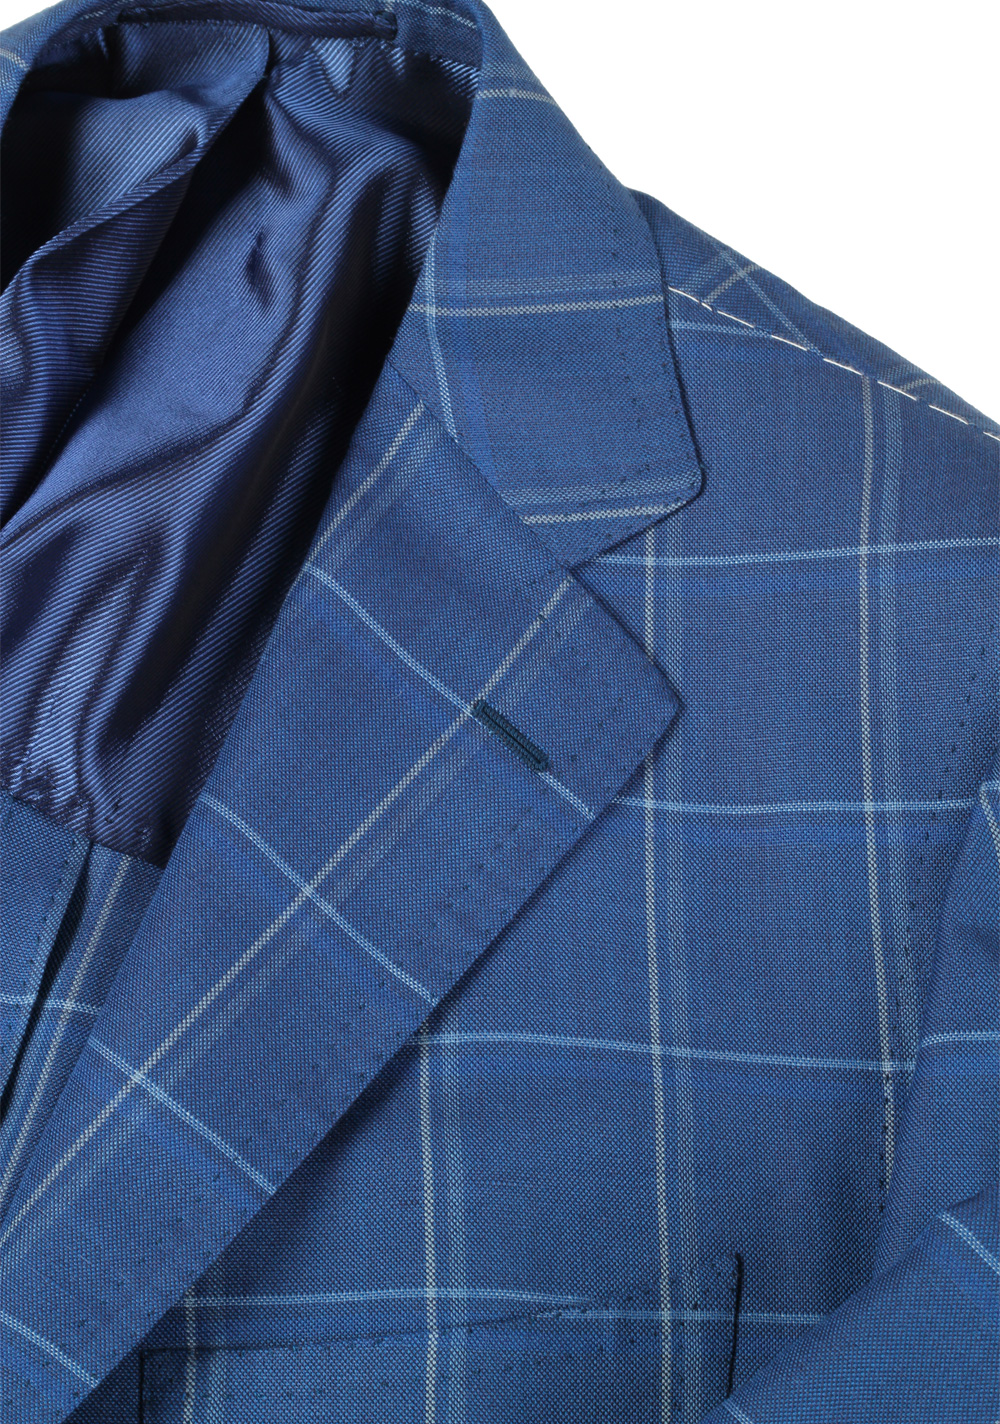 Attolini Sport Coat Size 52 / 42R U.S. Wool Silk | Costume Limité